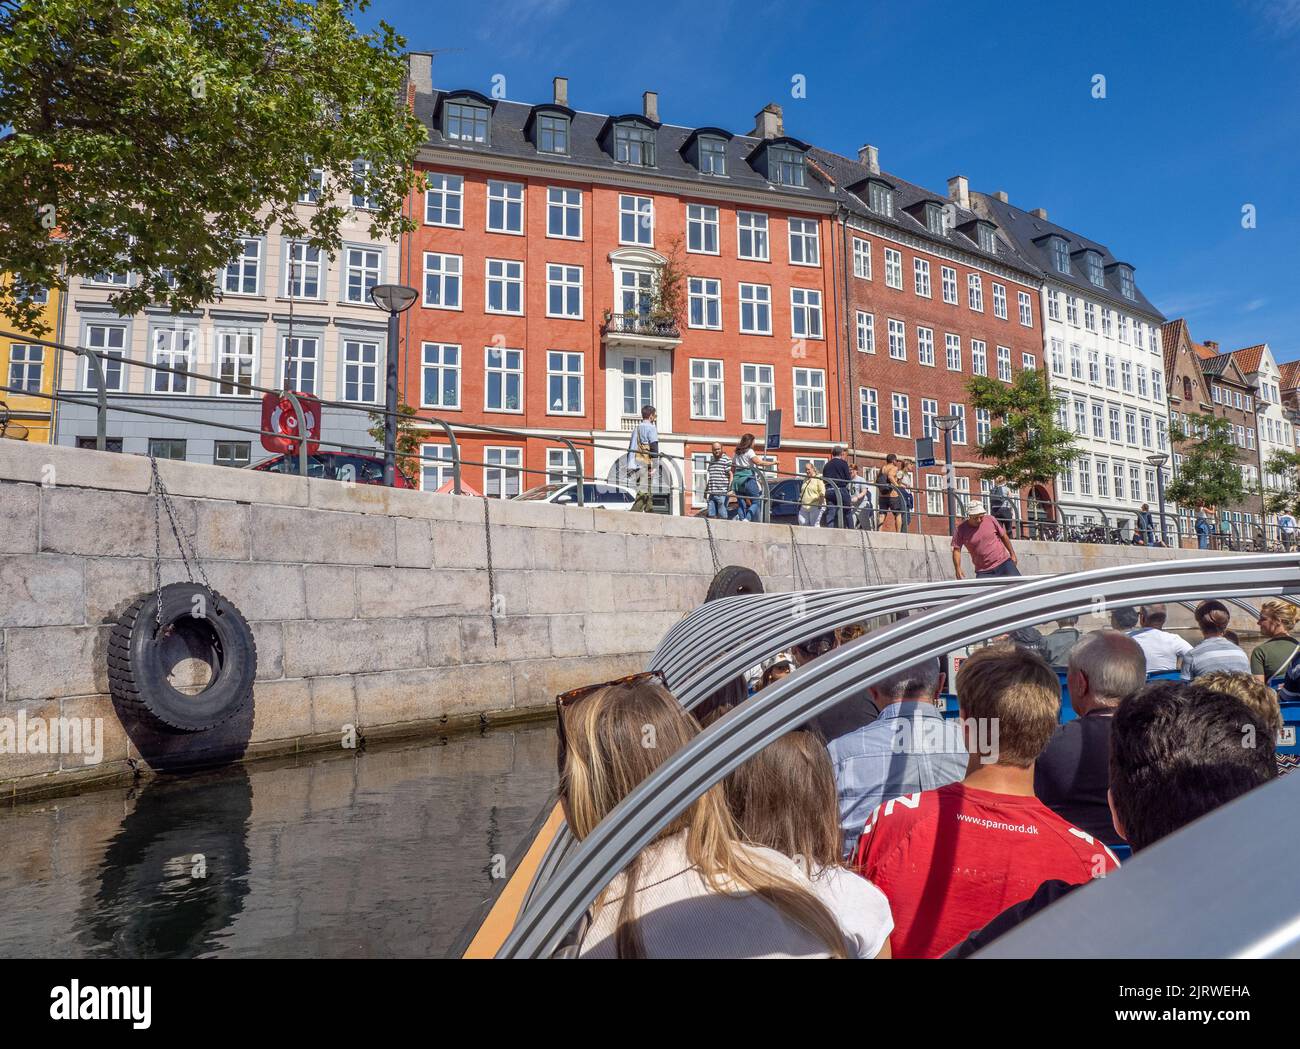 Los turistas disfrutan de una visita guiada por Copenhague, Dinamarca, en un barco por el canal navegando a lo largo del Frederiksholms Kanal bajo el sol Foto de stock